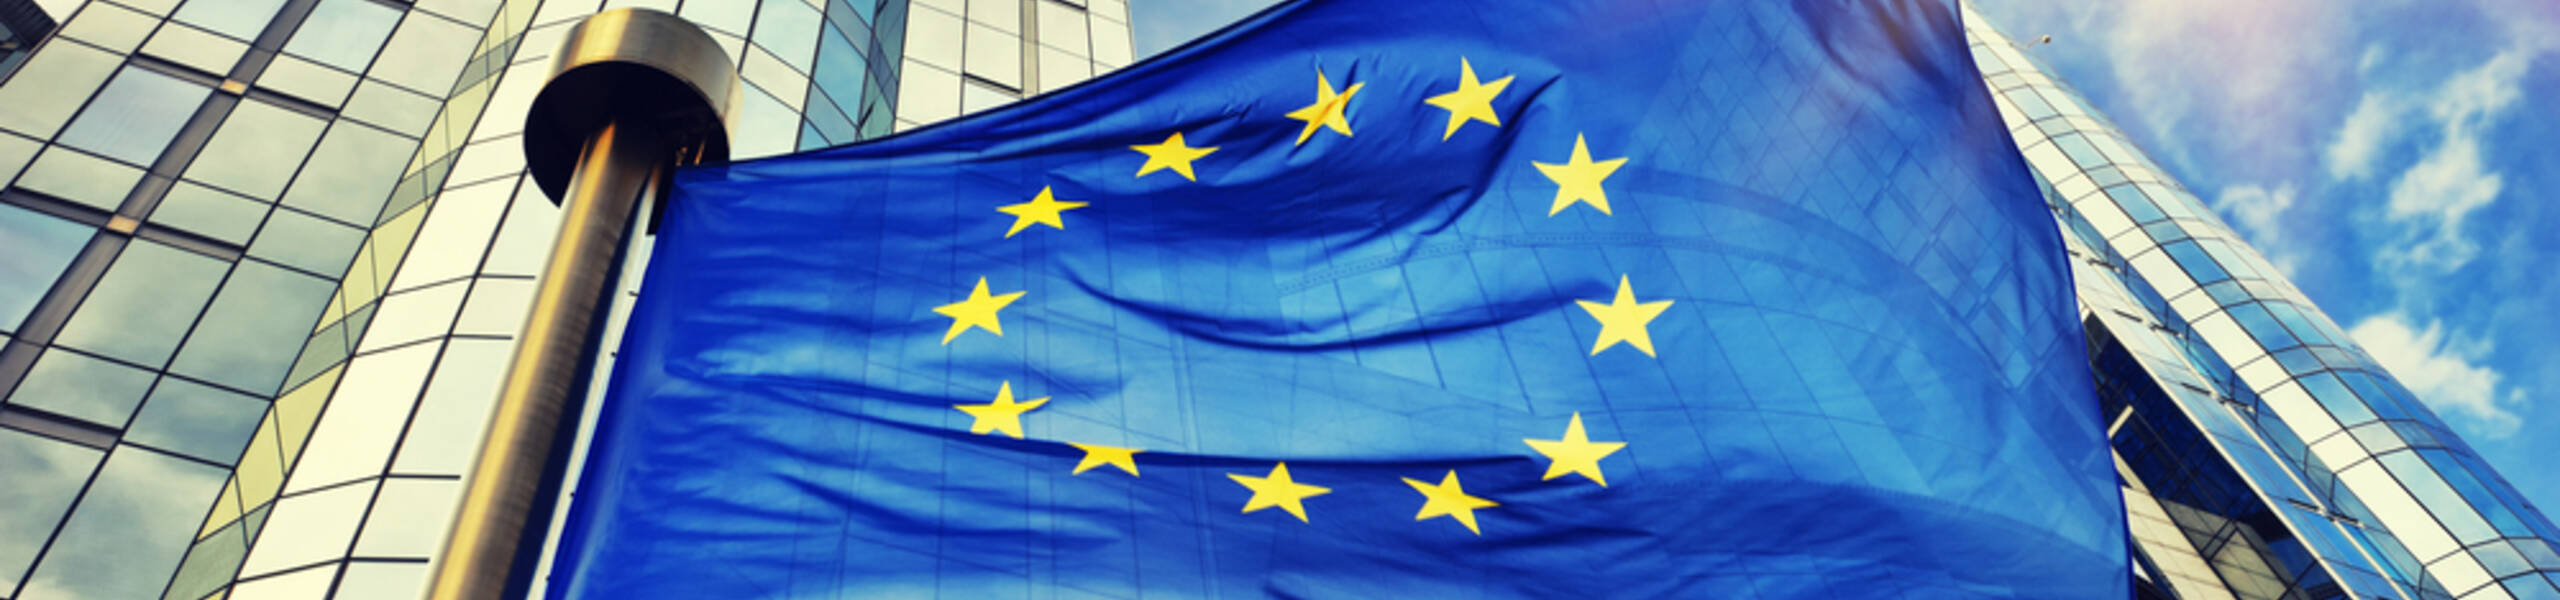 União Europeia publicara suas Vendas no Varejo